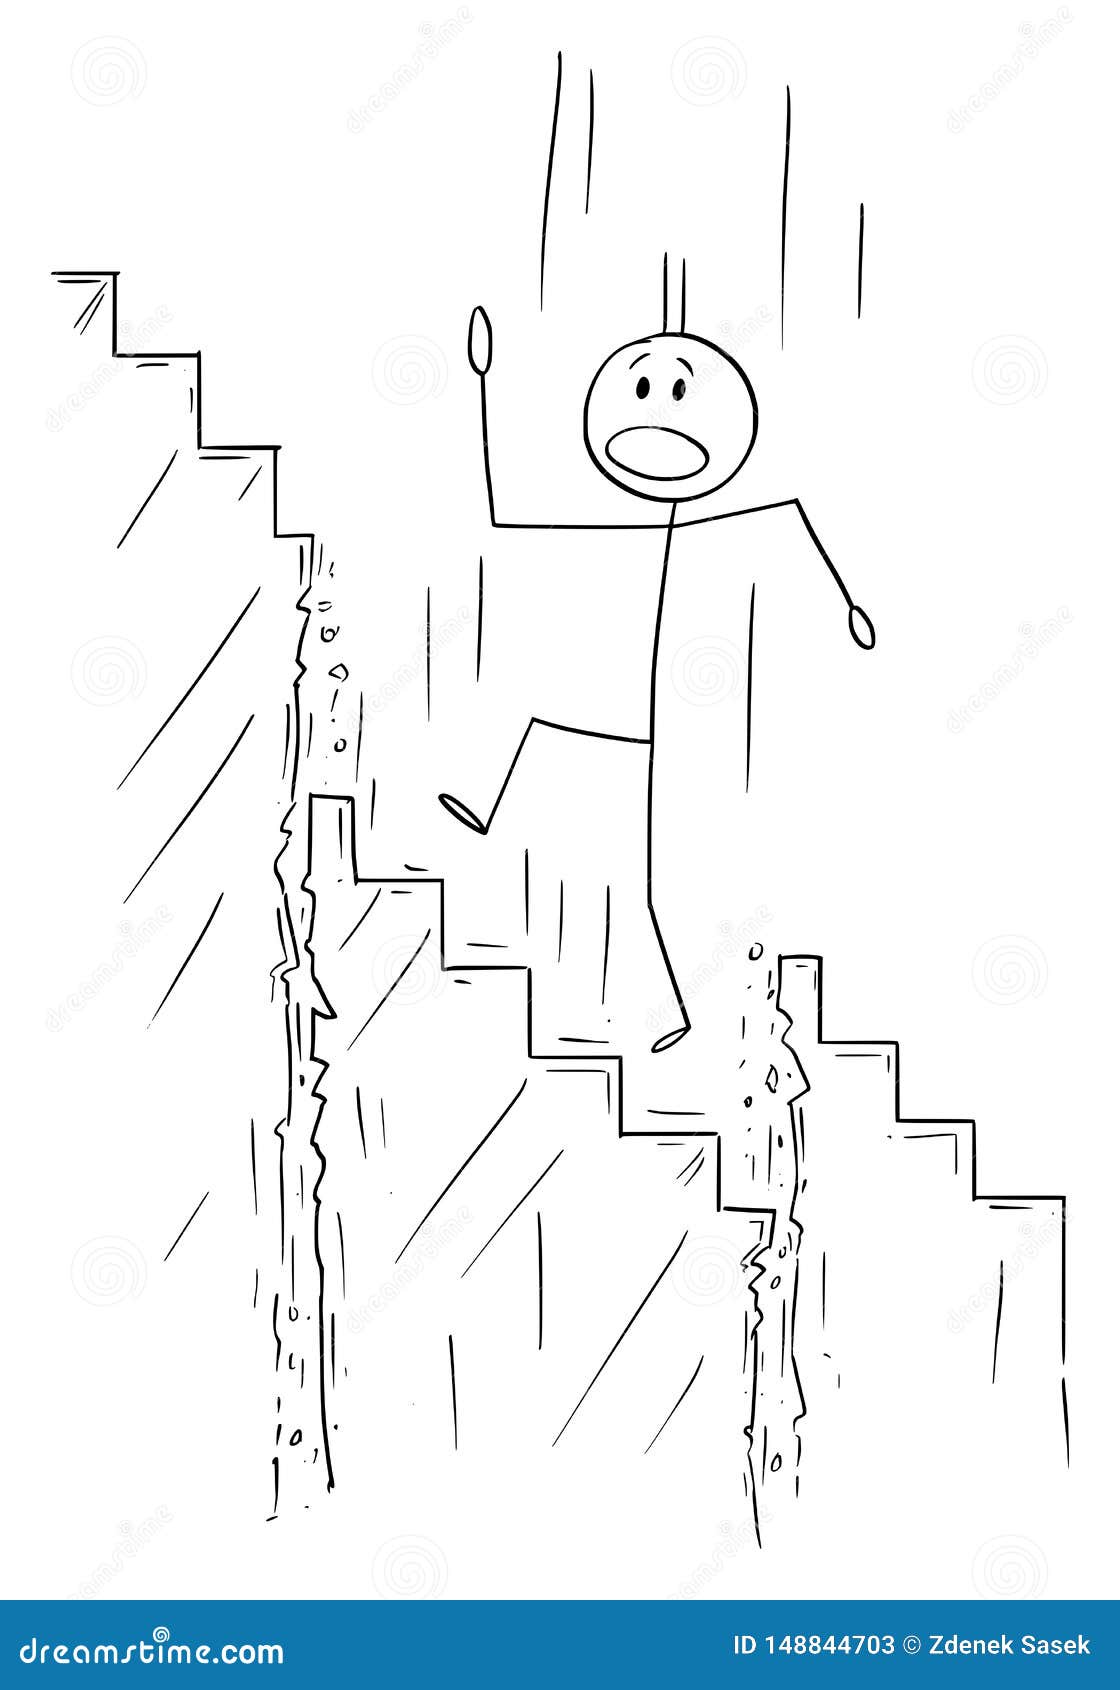 旋转楼梯 - 优动漫-动漫创作支援平台 | 优动漫PAINT绘画软件